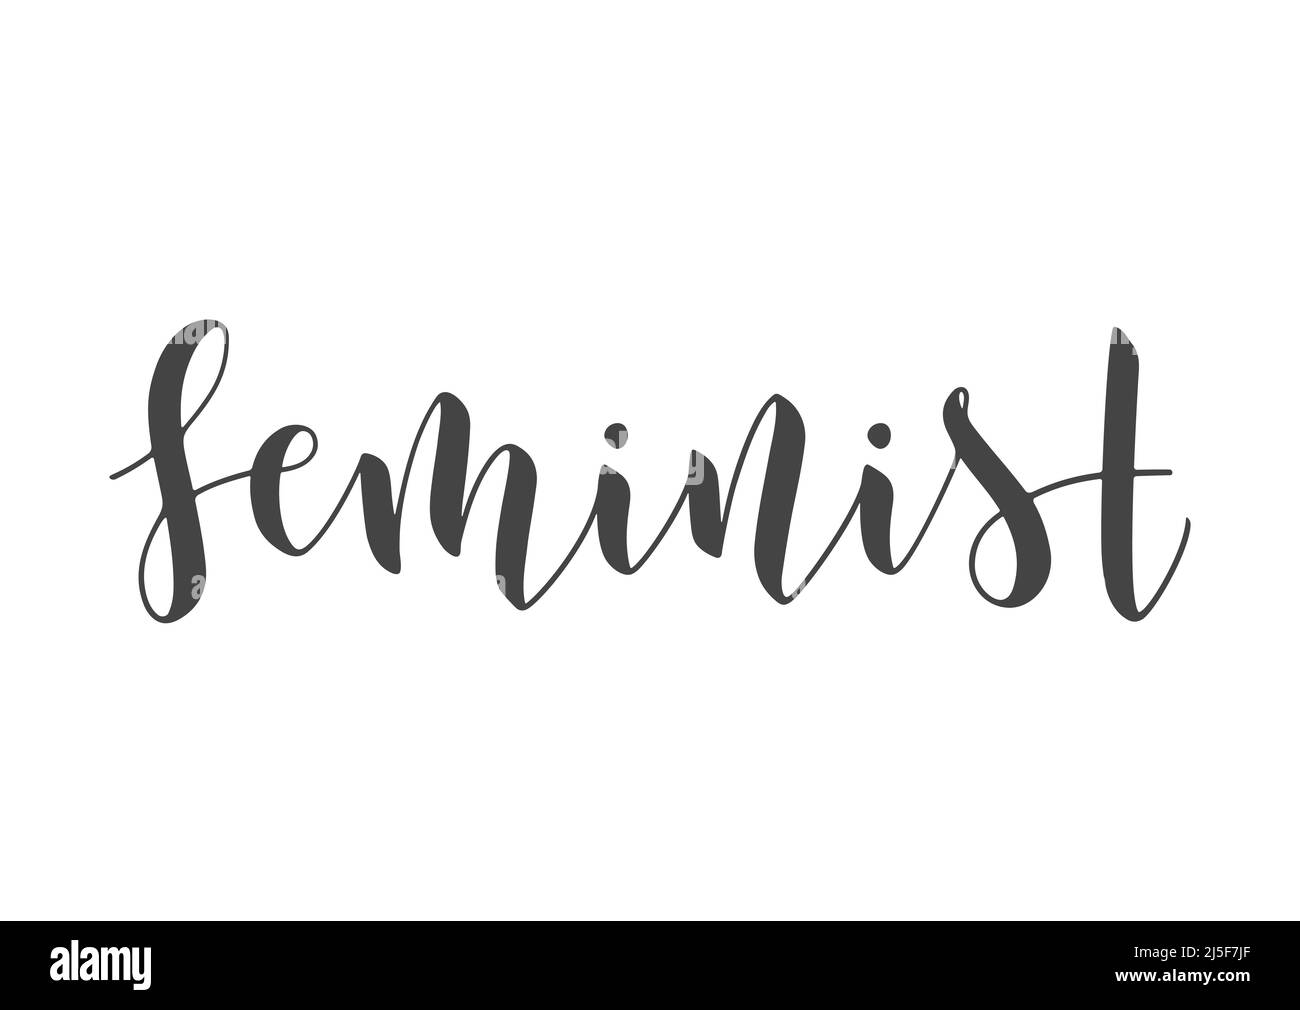 Vektorgrafik. Handgeschriebene Schriftzüge von Feministin. Vorlage für Karte, Etikett, Postkarte, Poster, Aufkleber, Print- oder Web-Produkt. Stock Vektor